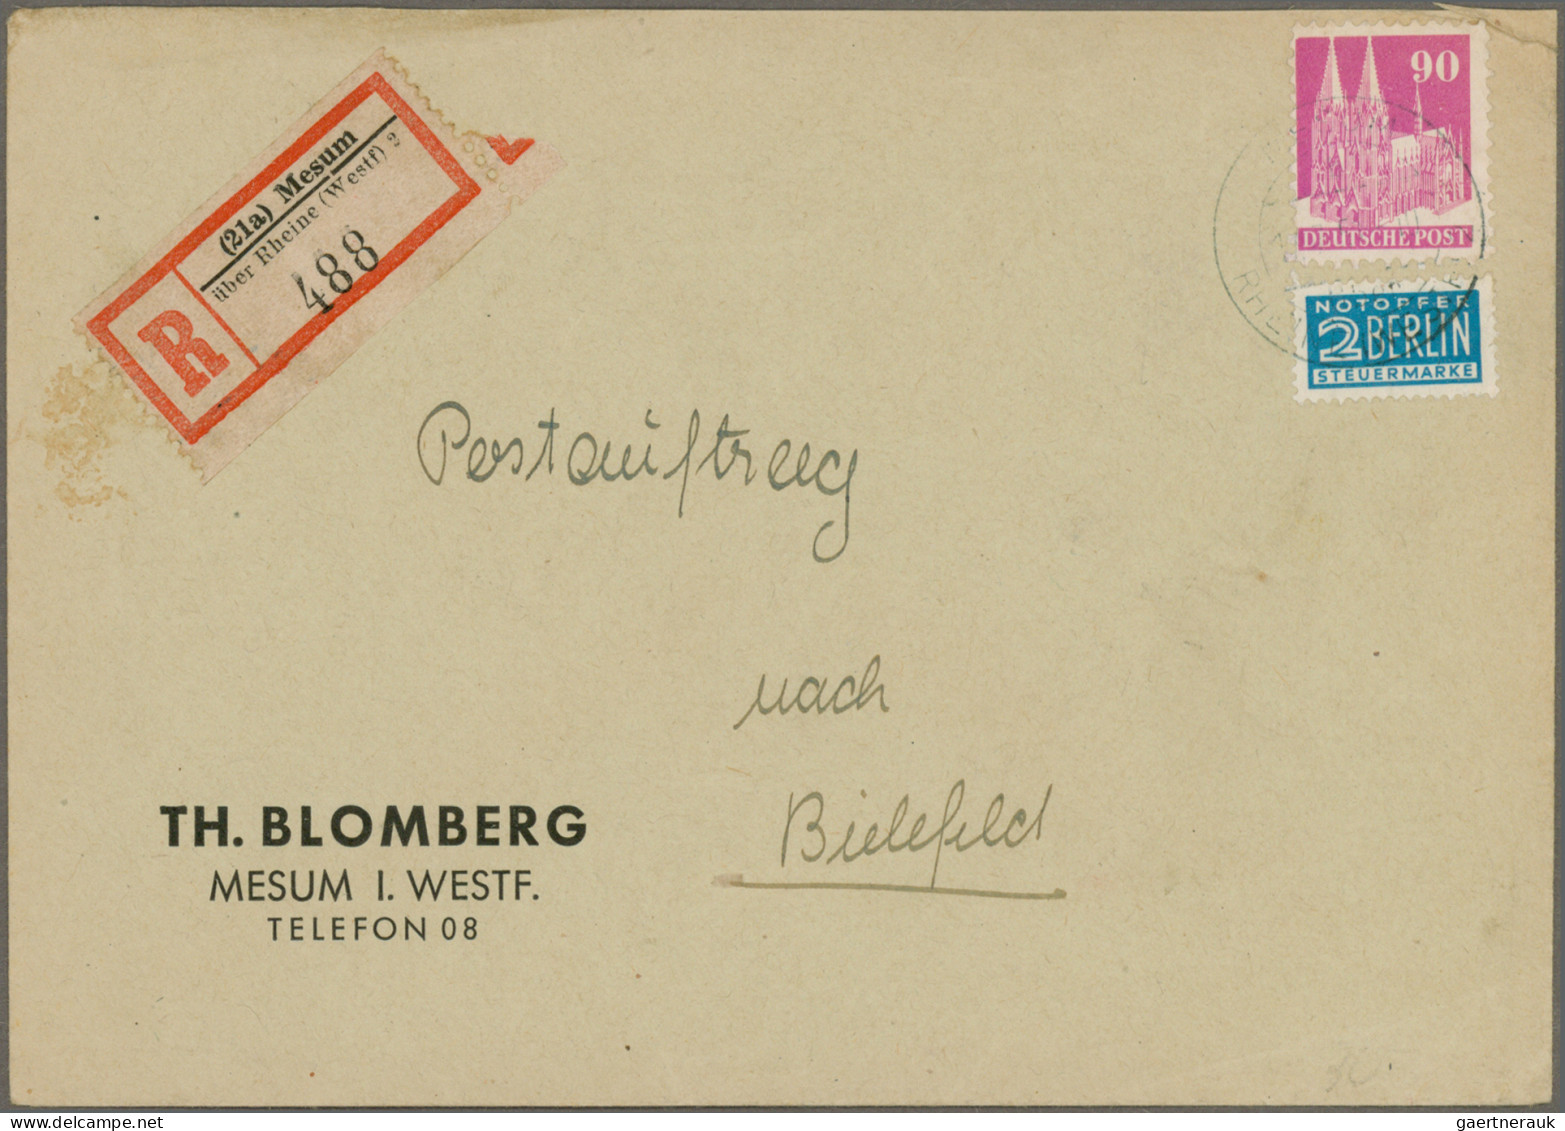 Bizone: 1948/1952, Bauten, saubere Sammlung von 61 Briefen und Karten in netter